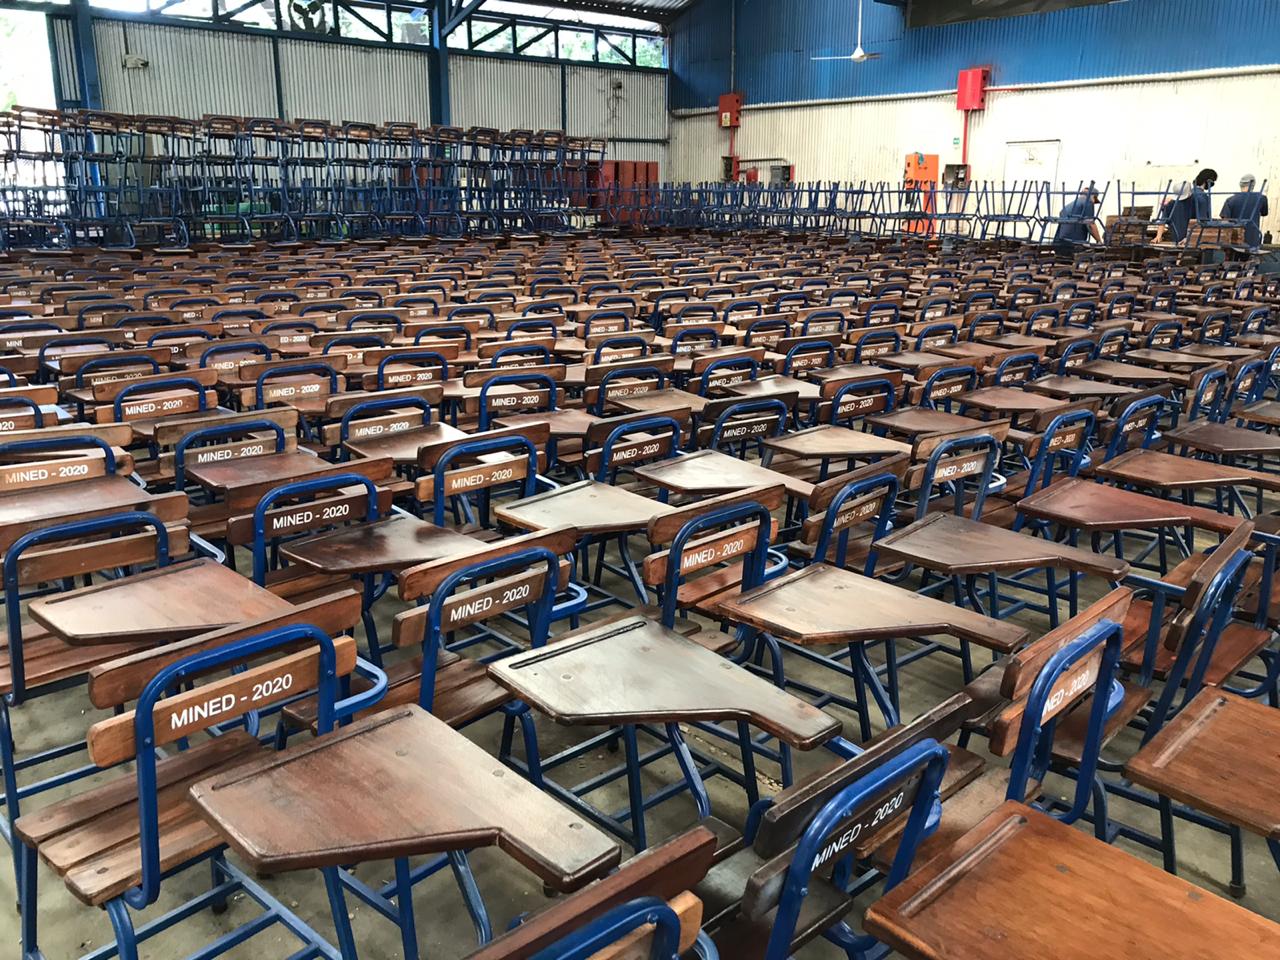 MINED entregará pupitres a 77 colegios esta semana Managua. Jerson Dumas/ Radio La Primerisima